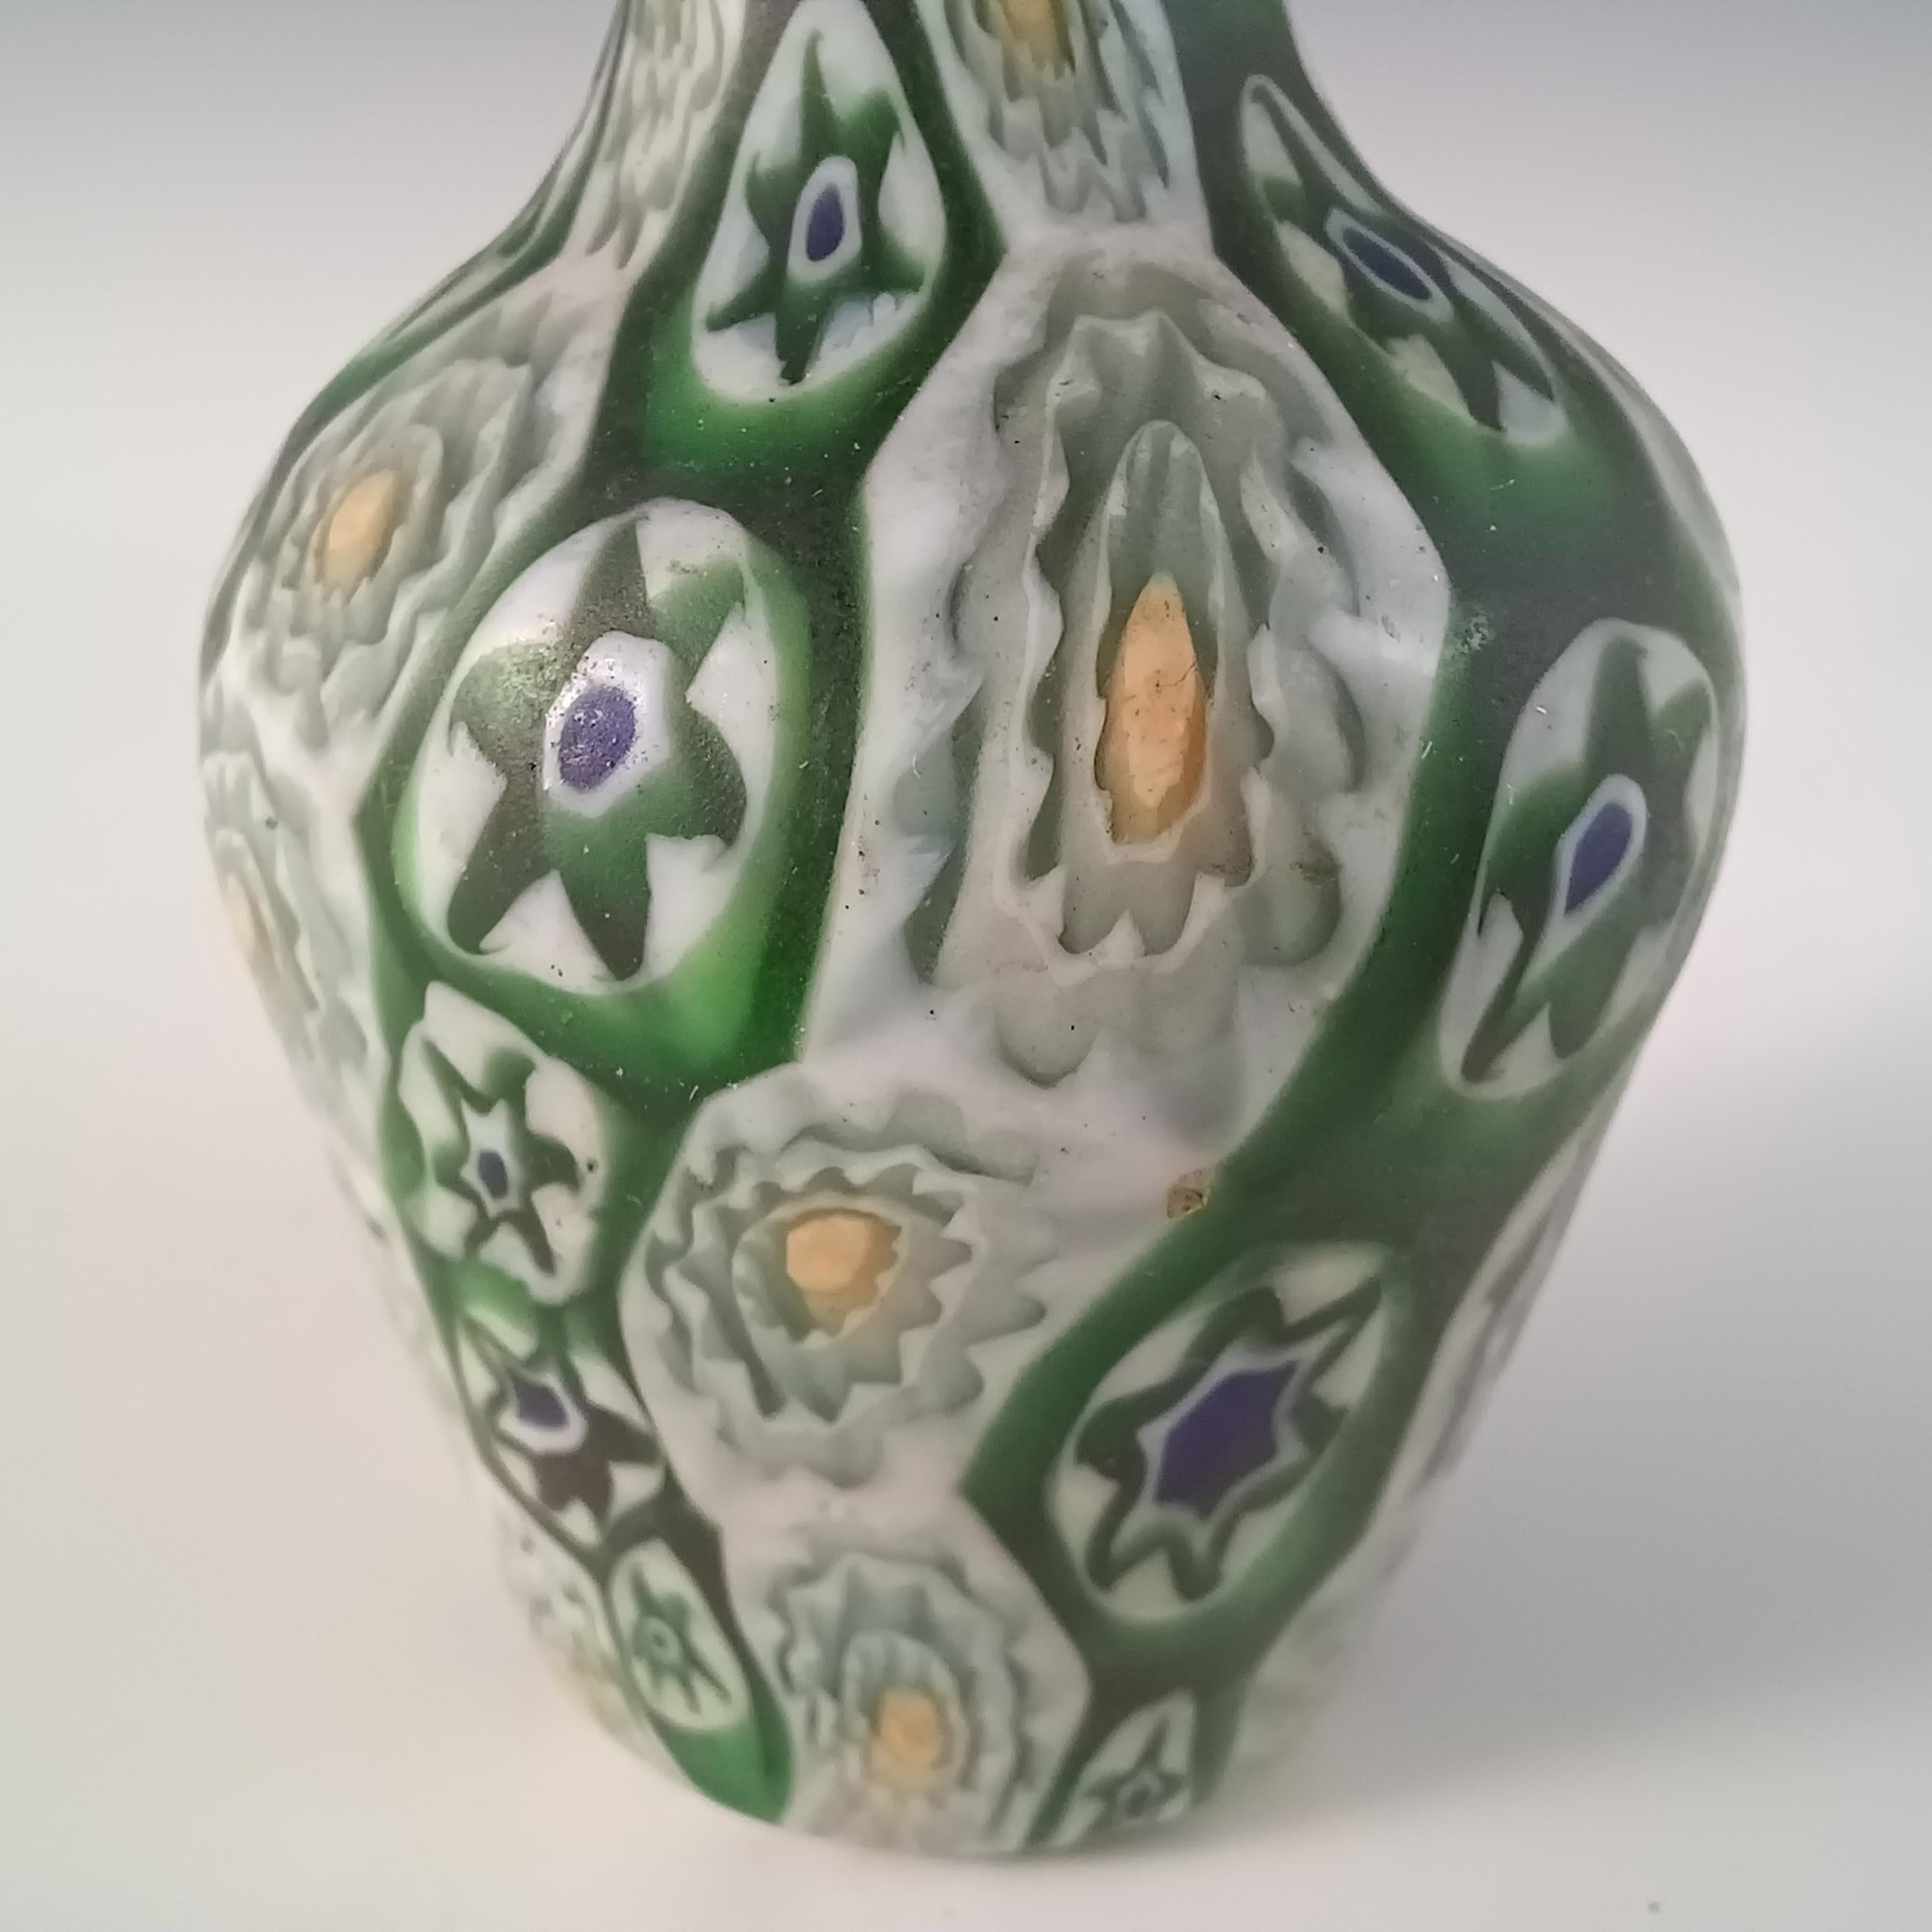 Italian Fratelli Toso Millefiori Canes Murano Green & White Glass Vase For Sale